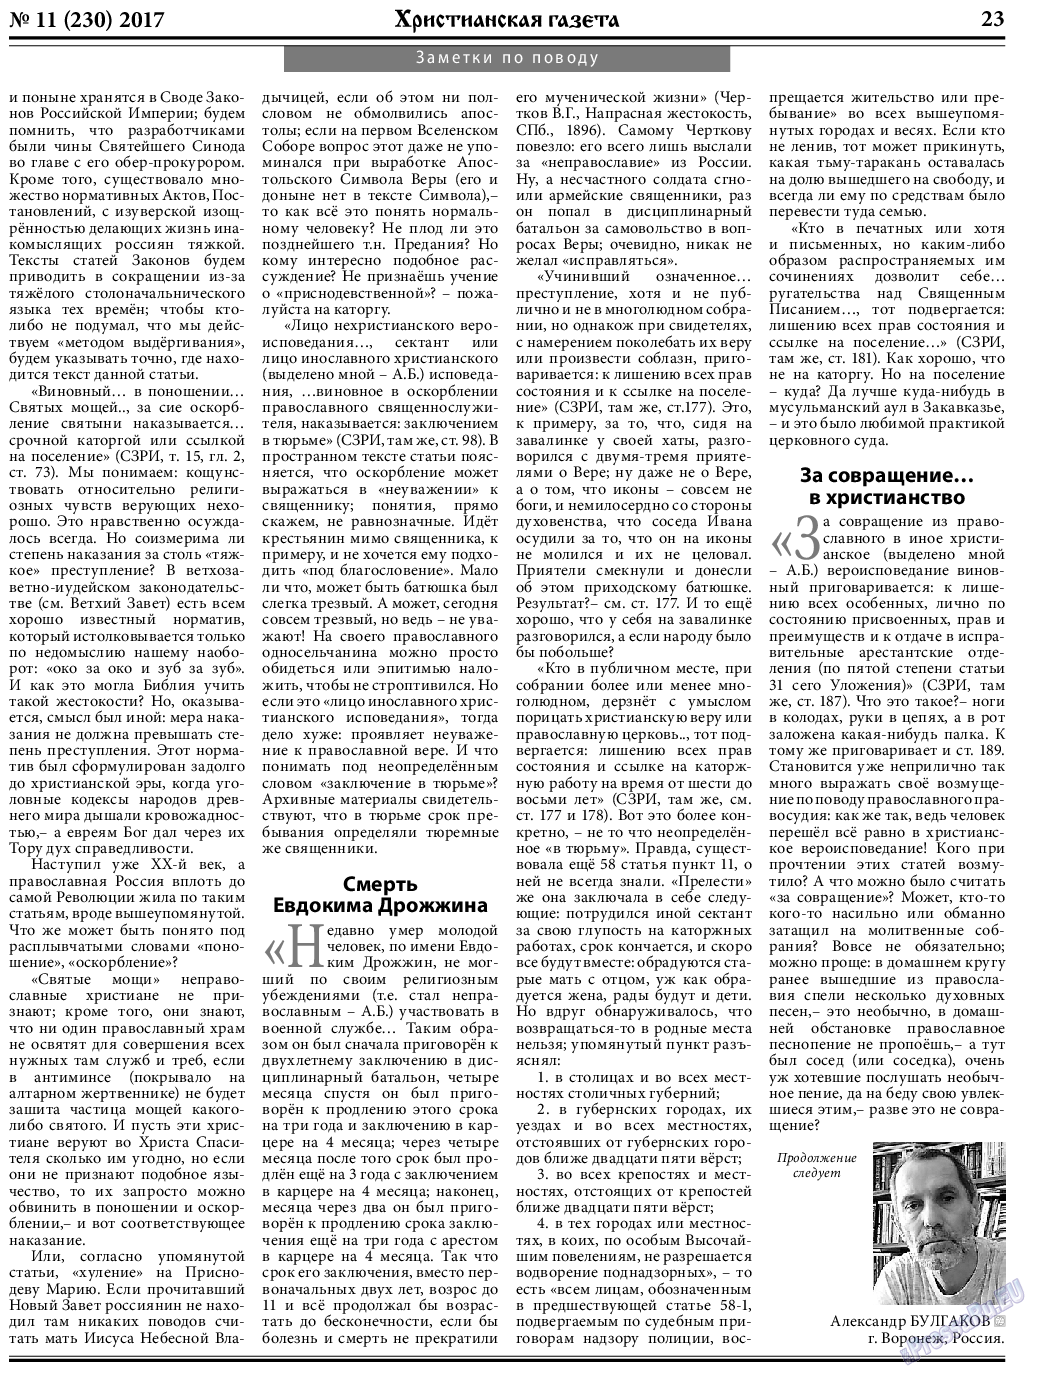 Христианская газета, газета. 2017 №11 стр.23